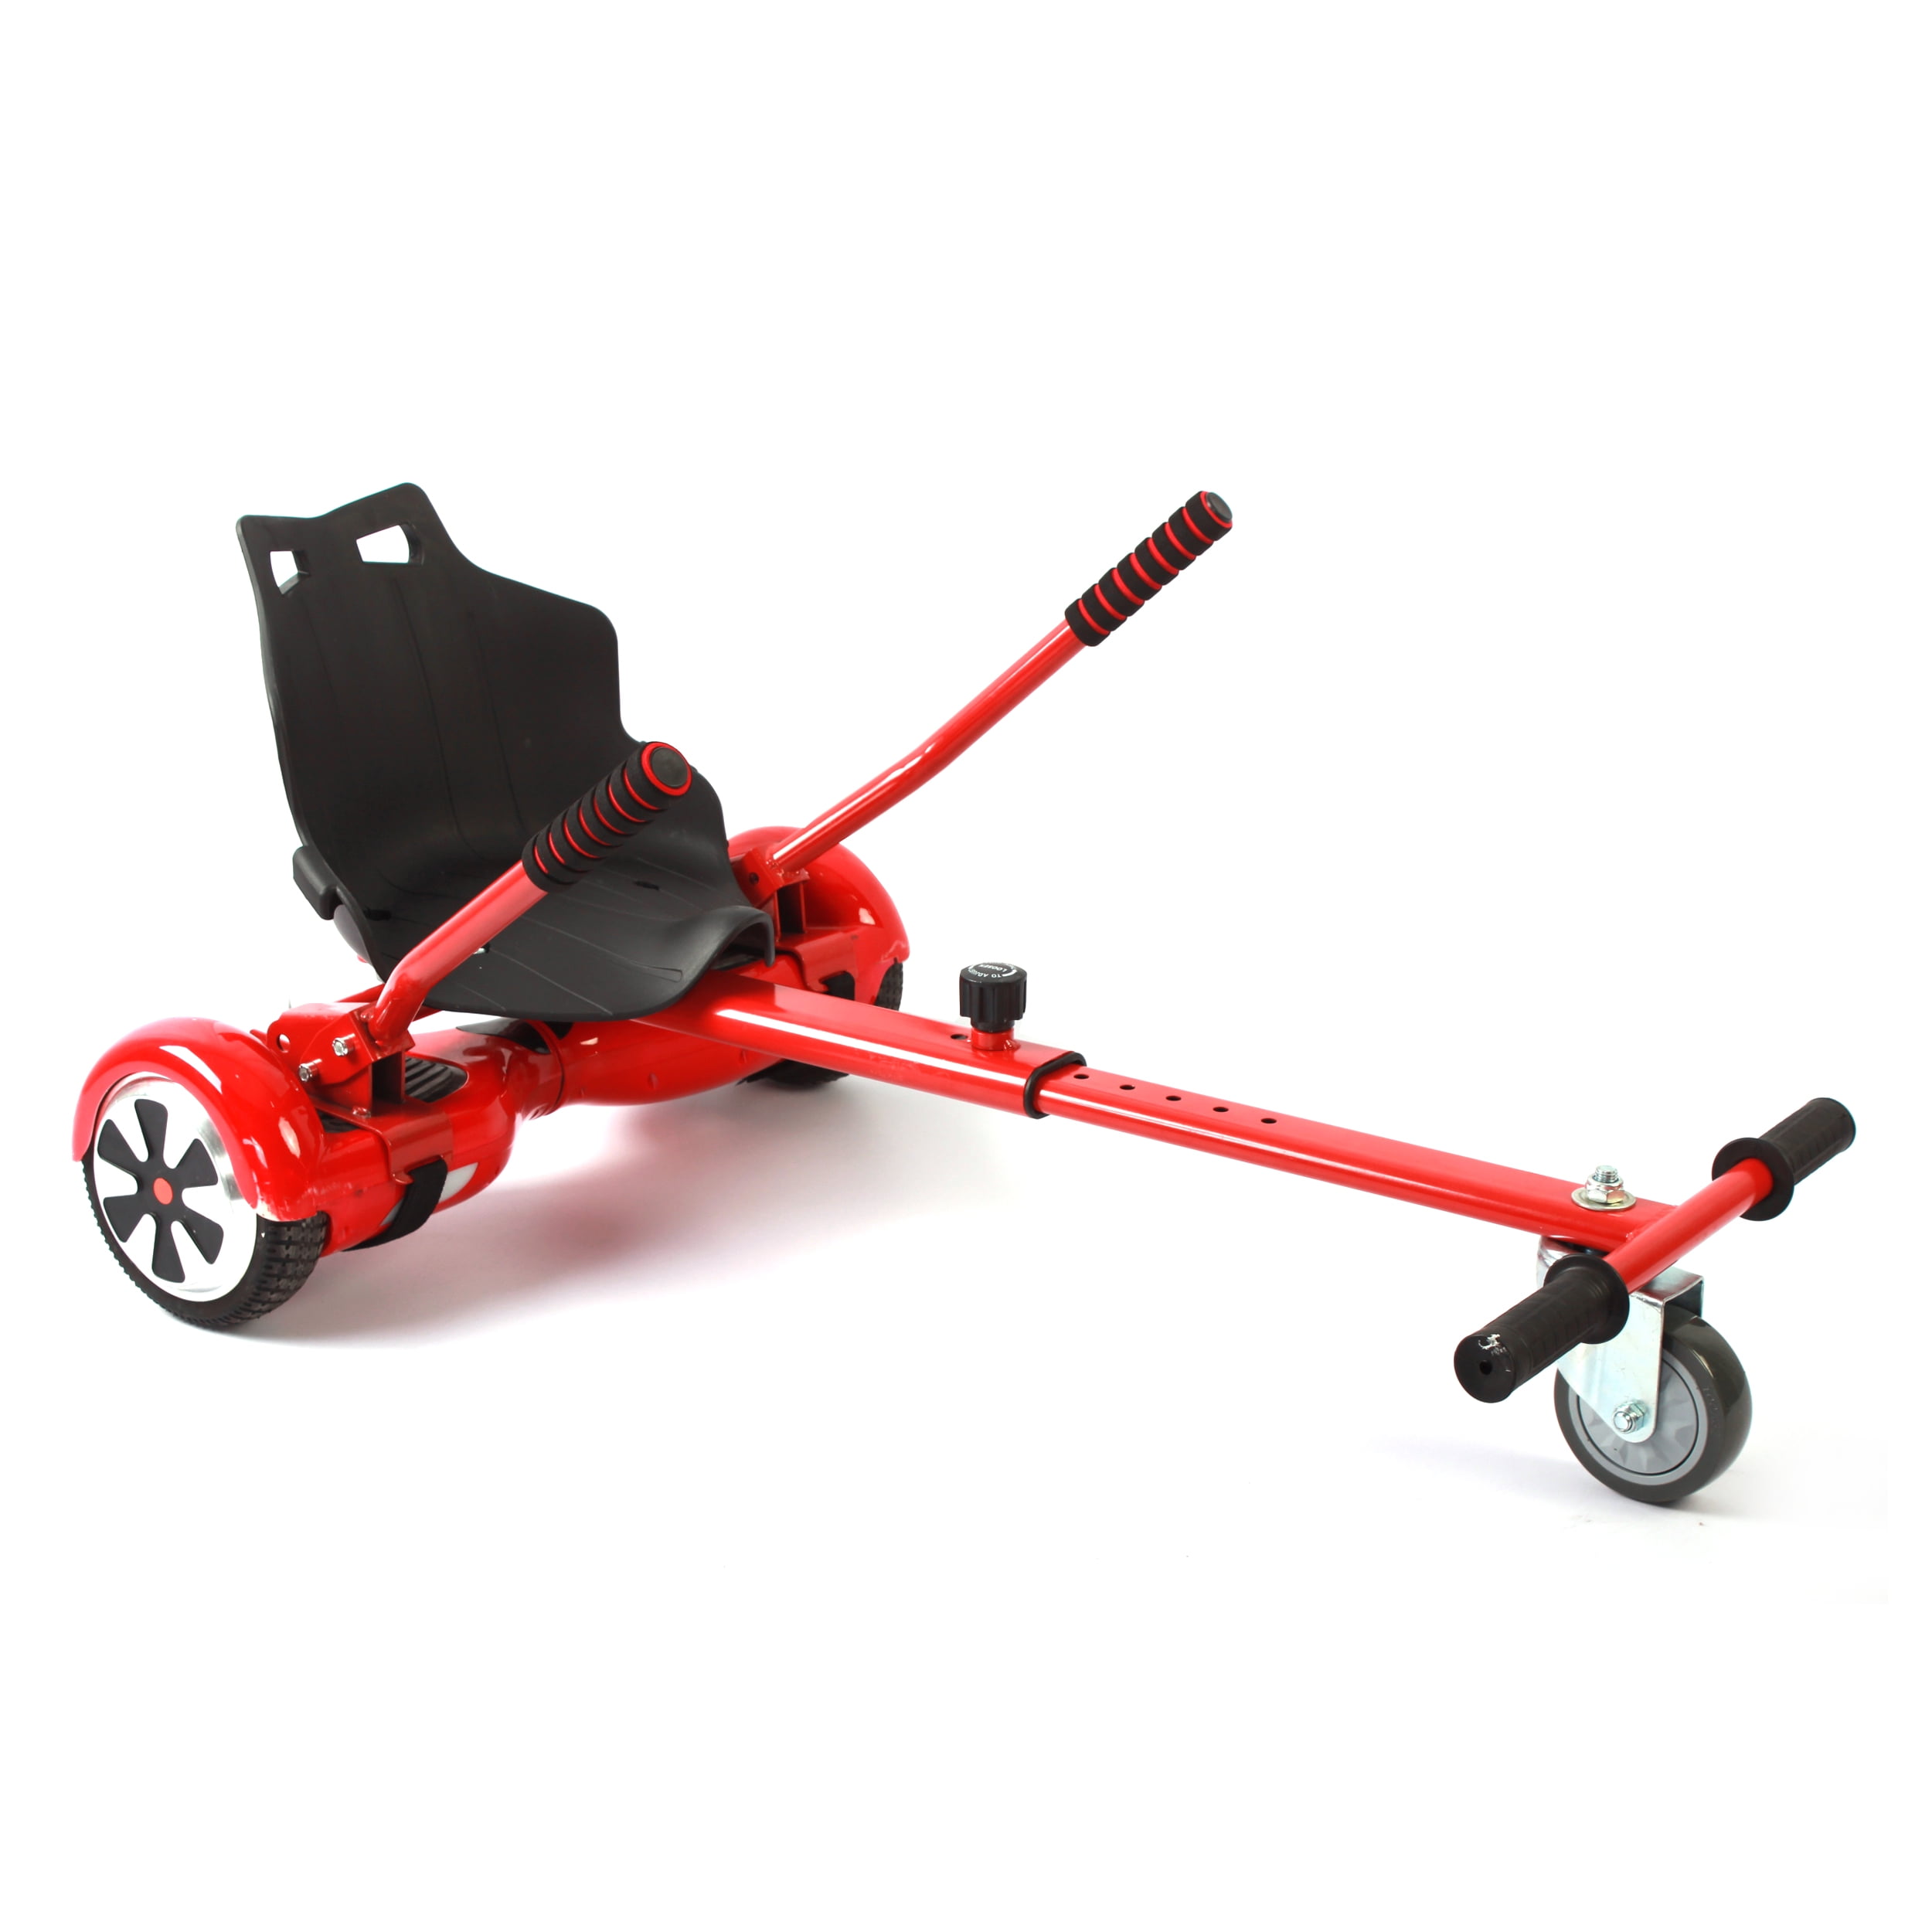 Black Adjustable Go Kart Cart HoverKart Hovercart Stand Seat for Hoverboard 